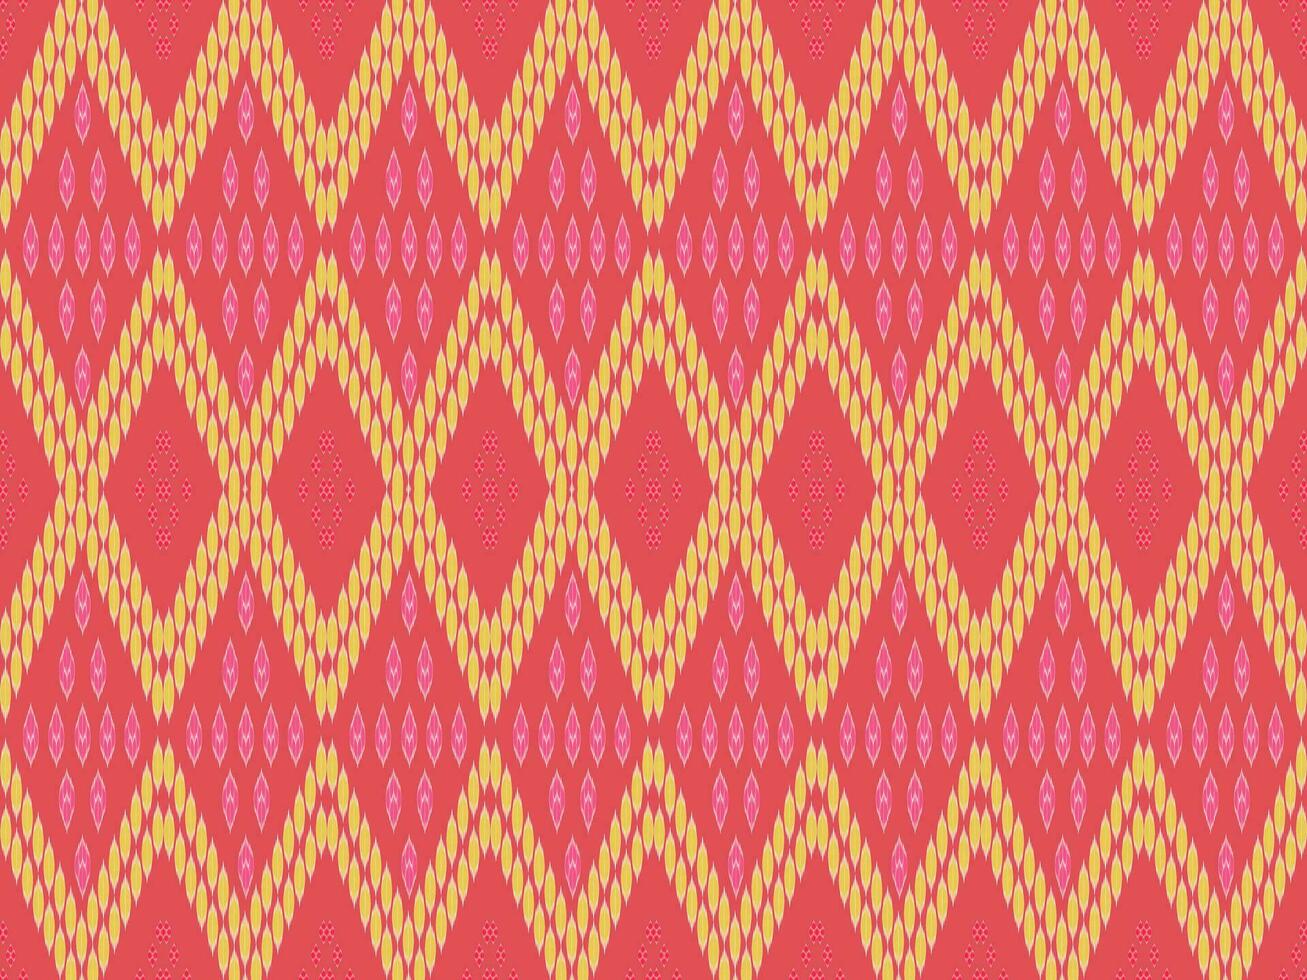 astratto etnico azteco geometrico modello design per background.american, messicano, indiano, bohémien style.vettore,illustrazione,tessuto,abbigliamento,tappeto,tessile,confezione,batik,ricamo,maglieria,ikat vettore